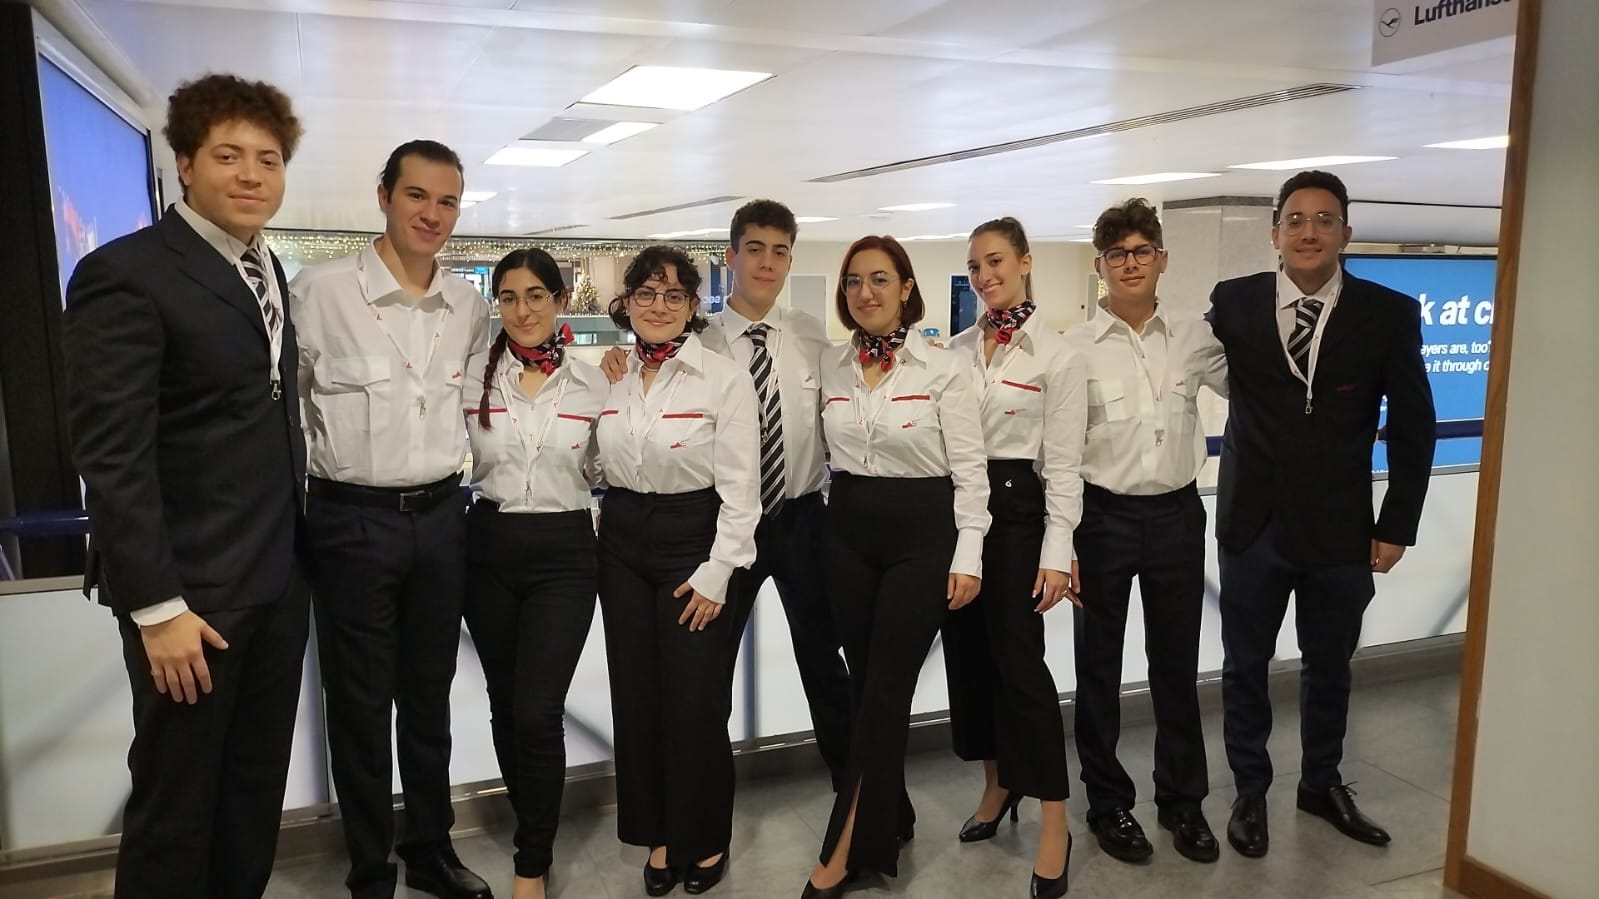 Progetto MEN: 9 giovani siciliani hanno preso servizio al “Malta International Airport”